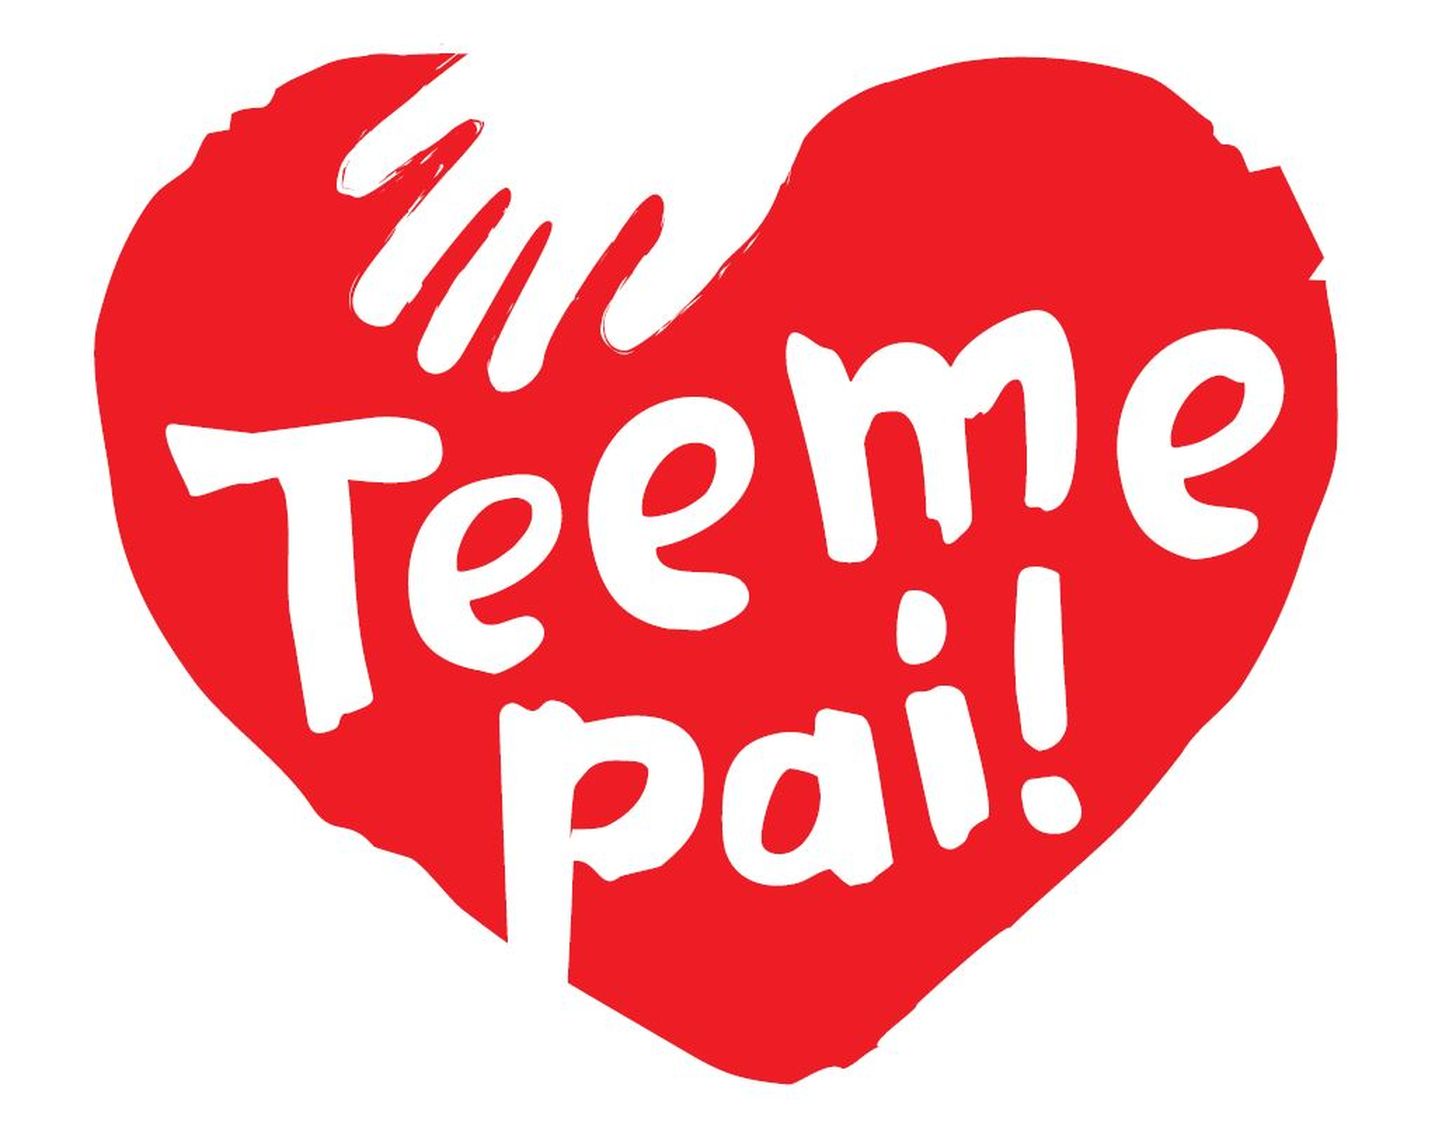 Логотип кампании Teeme pai!